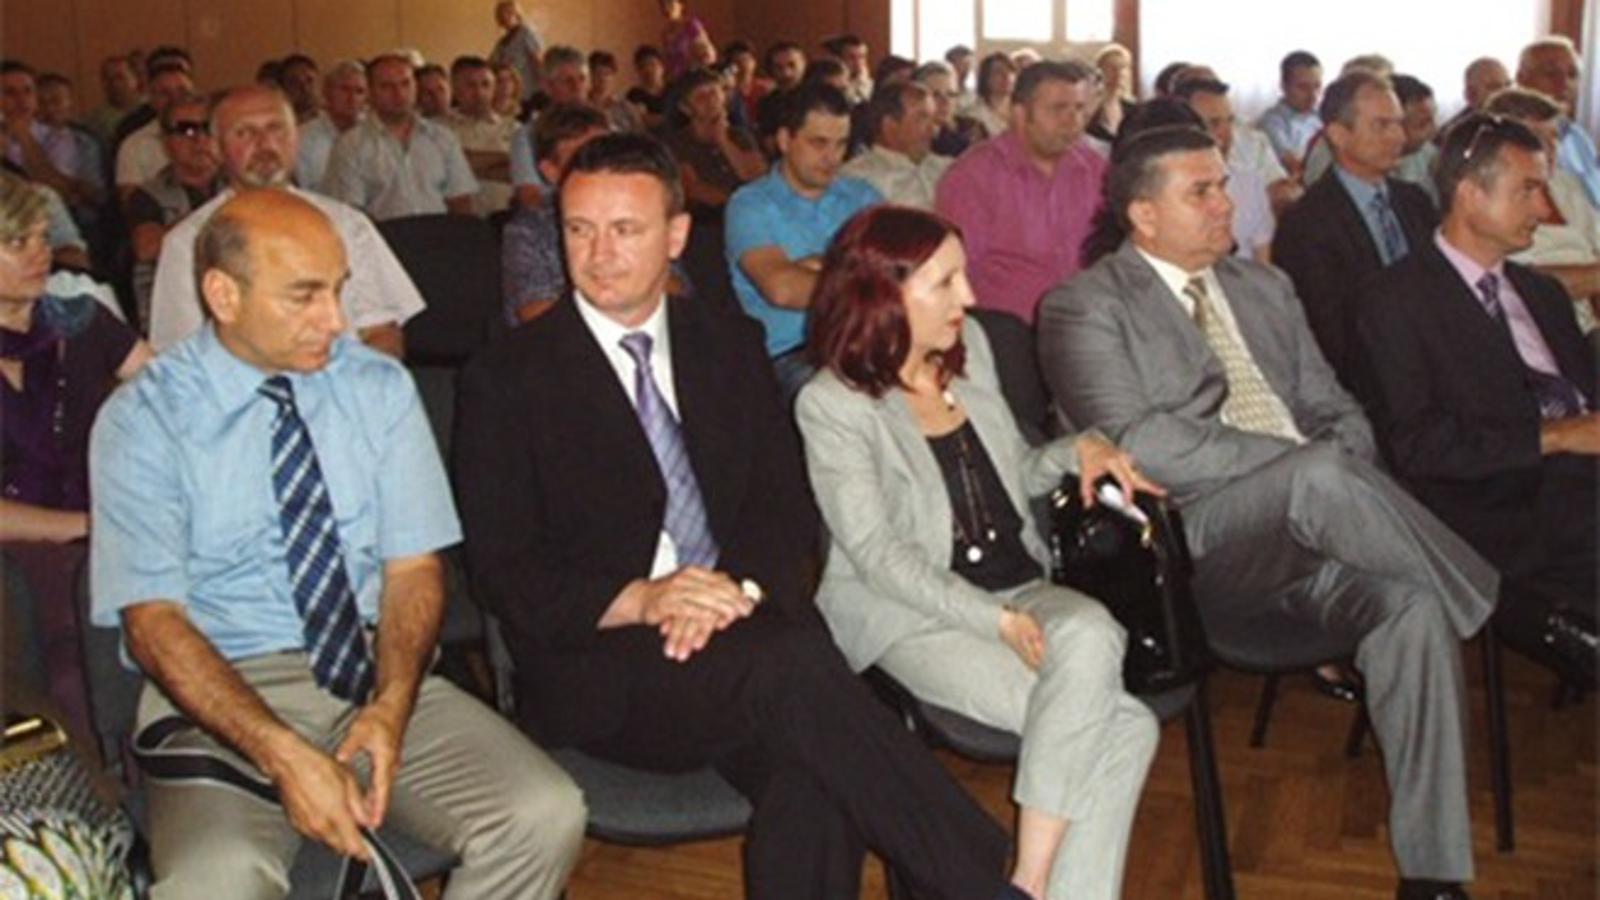 Dan općine Okučani 15. lipnja 2011.